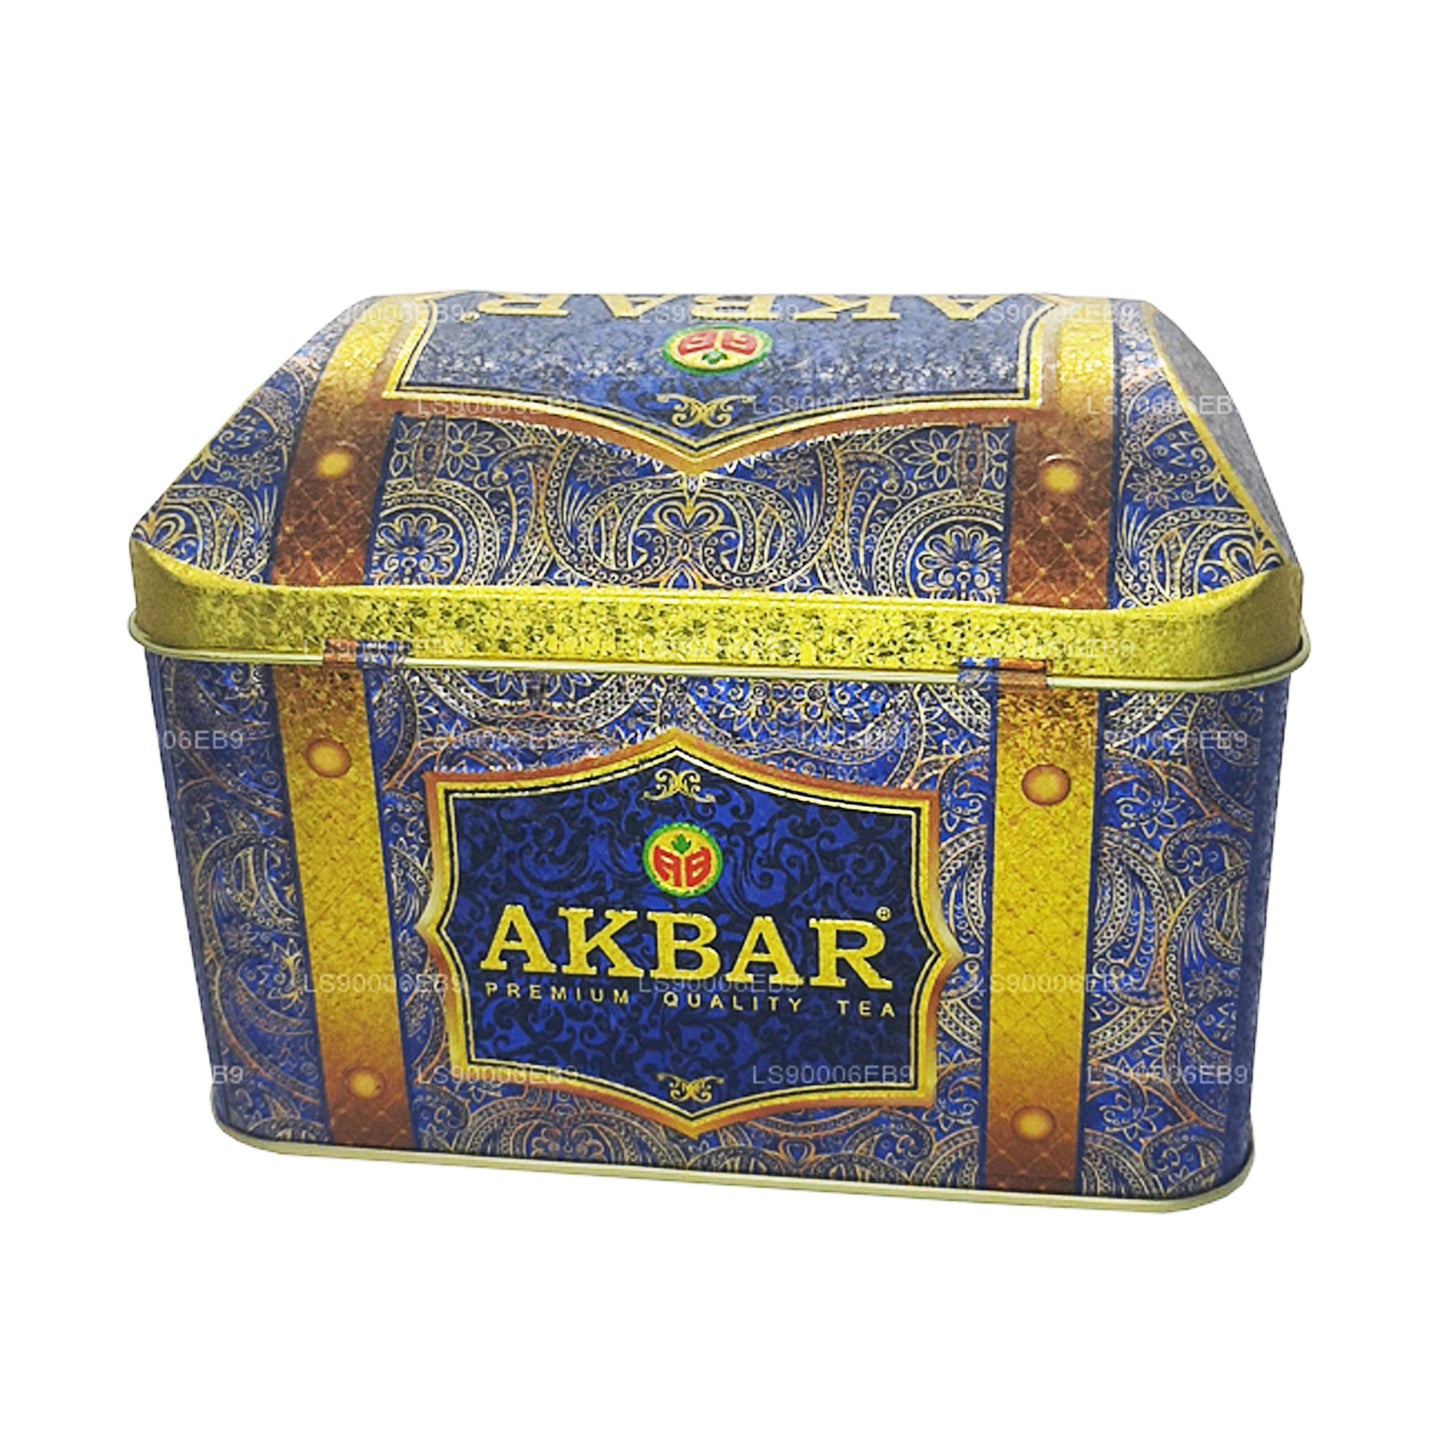 Akbar Exclusive Collection Oriental Mystery Schatzkiste (250 g)